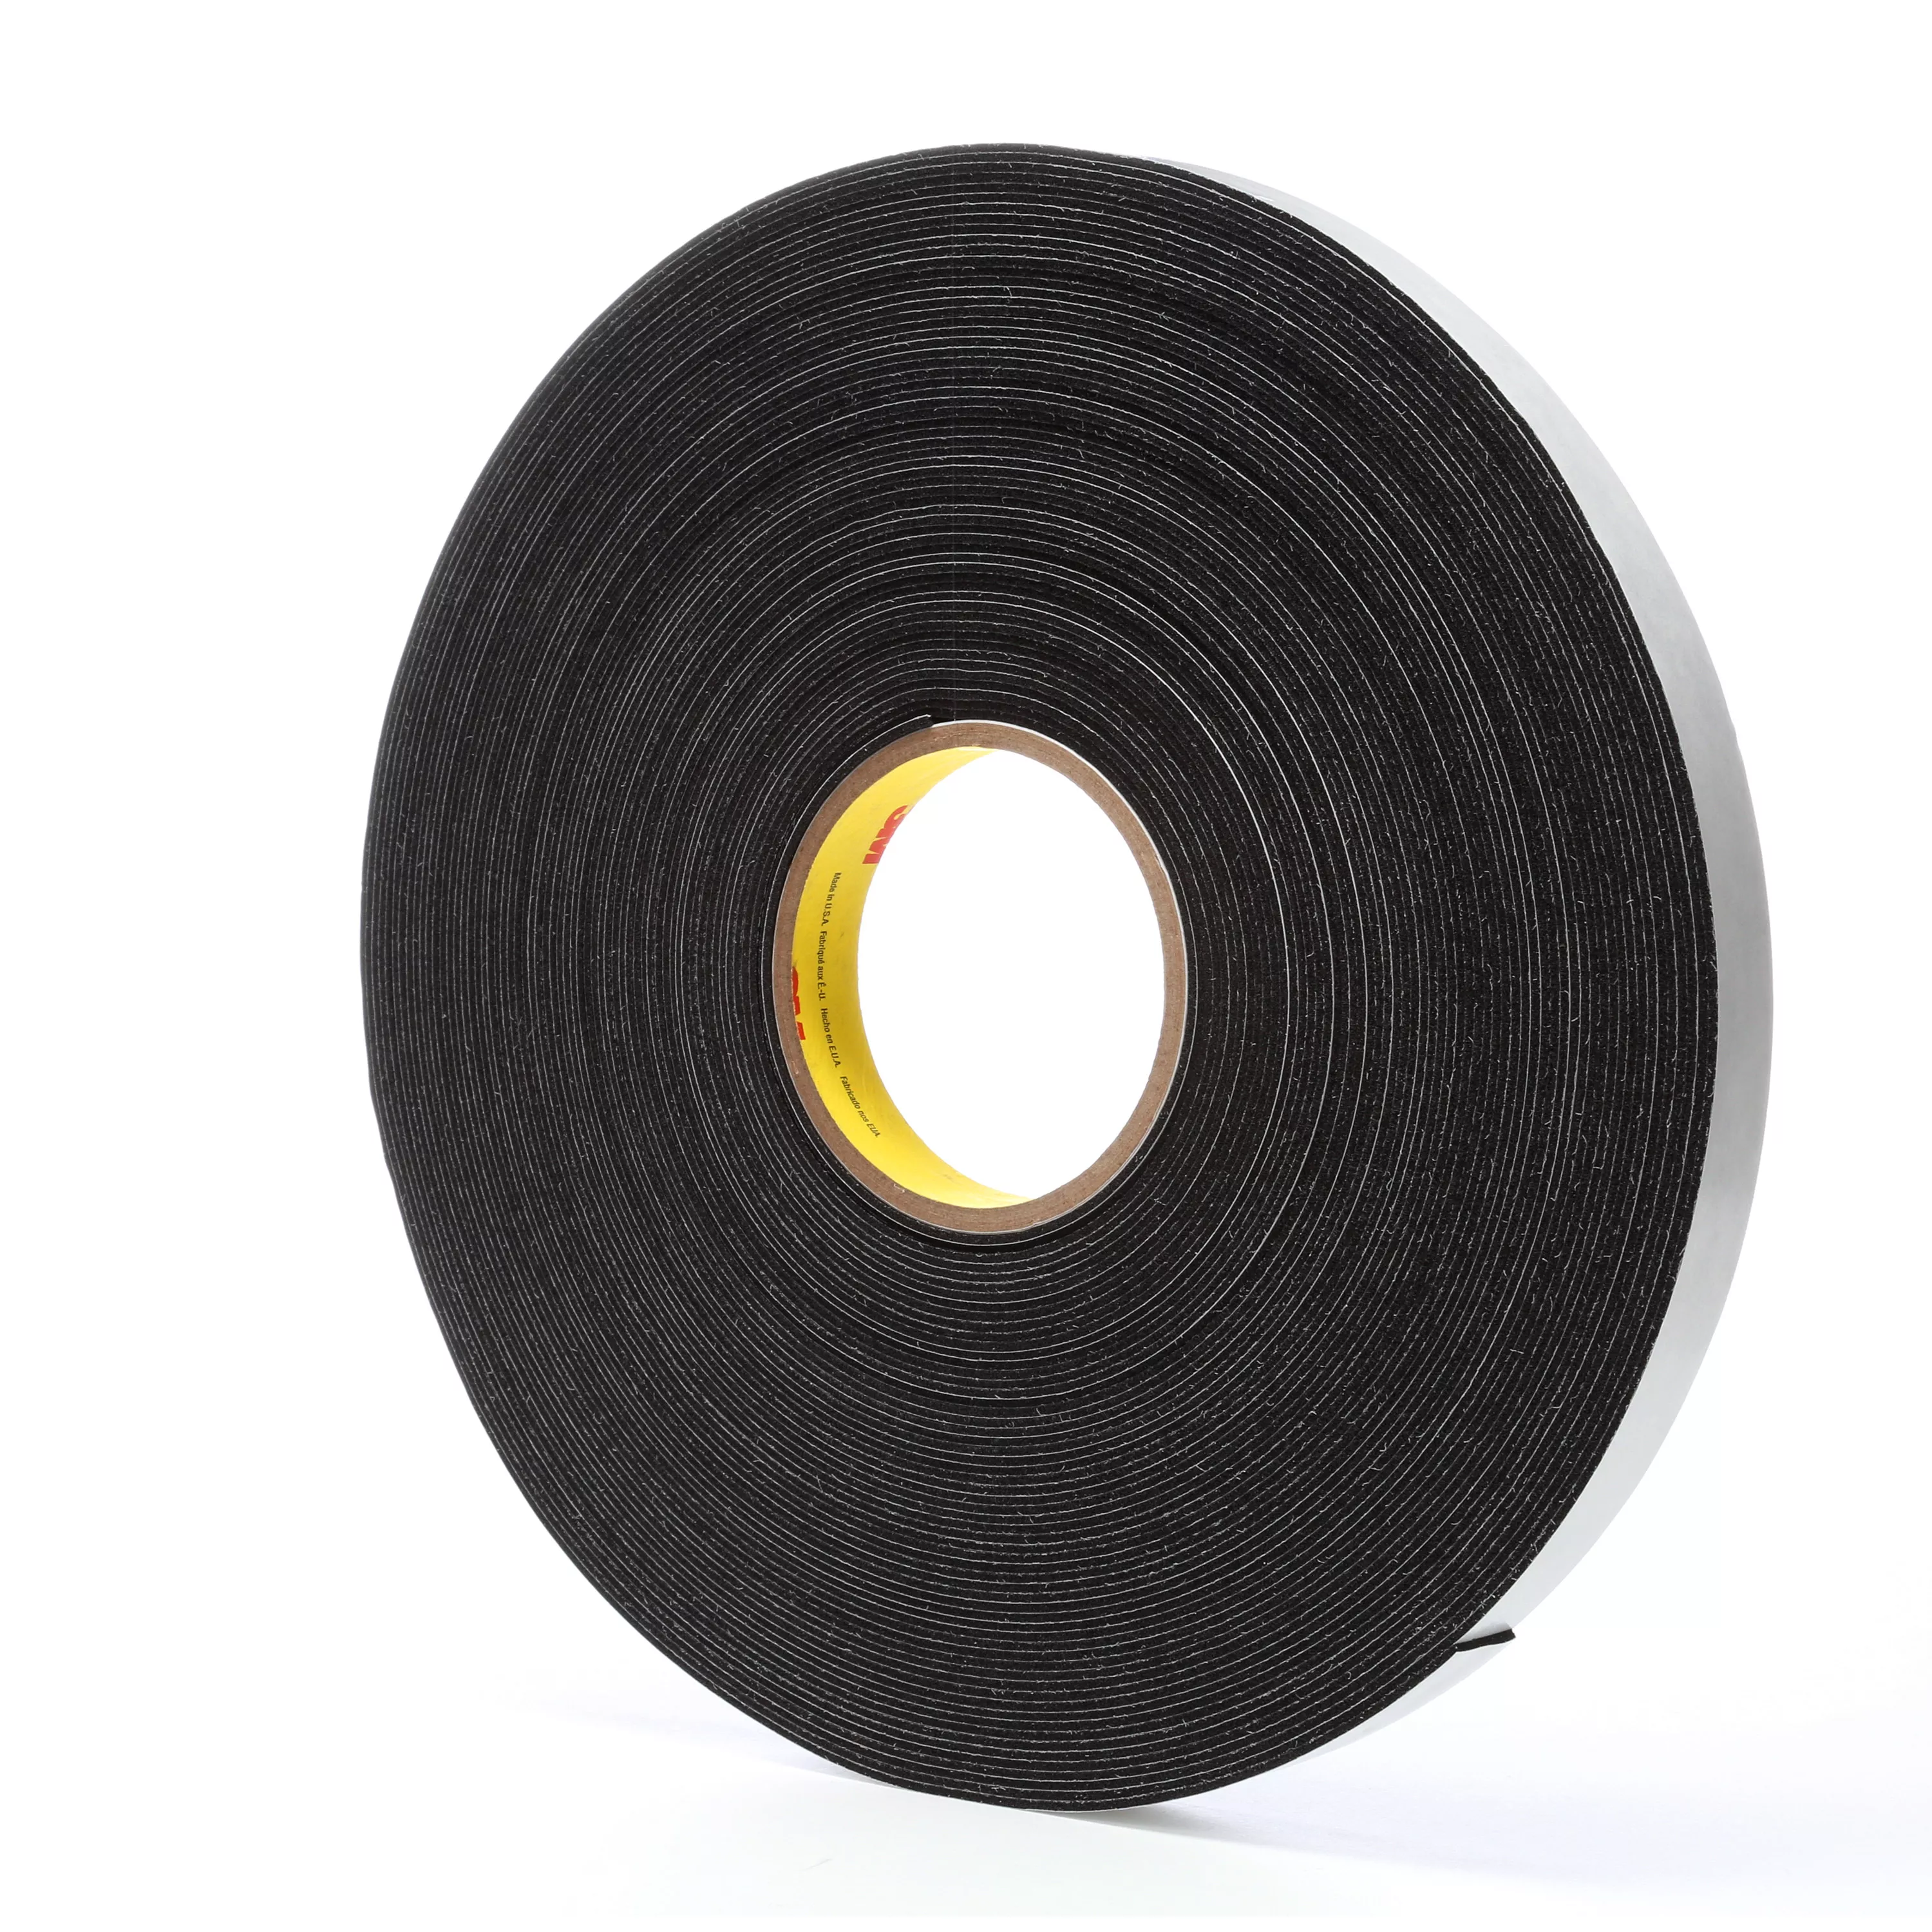 3M™ Venture Tape™ Vinyl Foam Tape 1714, Gray, 3/8 in x 50 ft, 250 mil,
32 Roll/Case